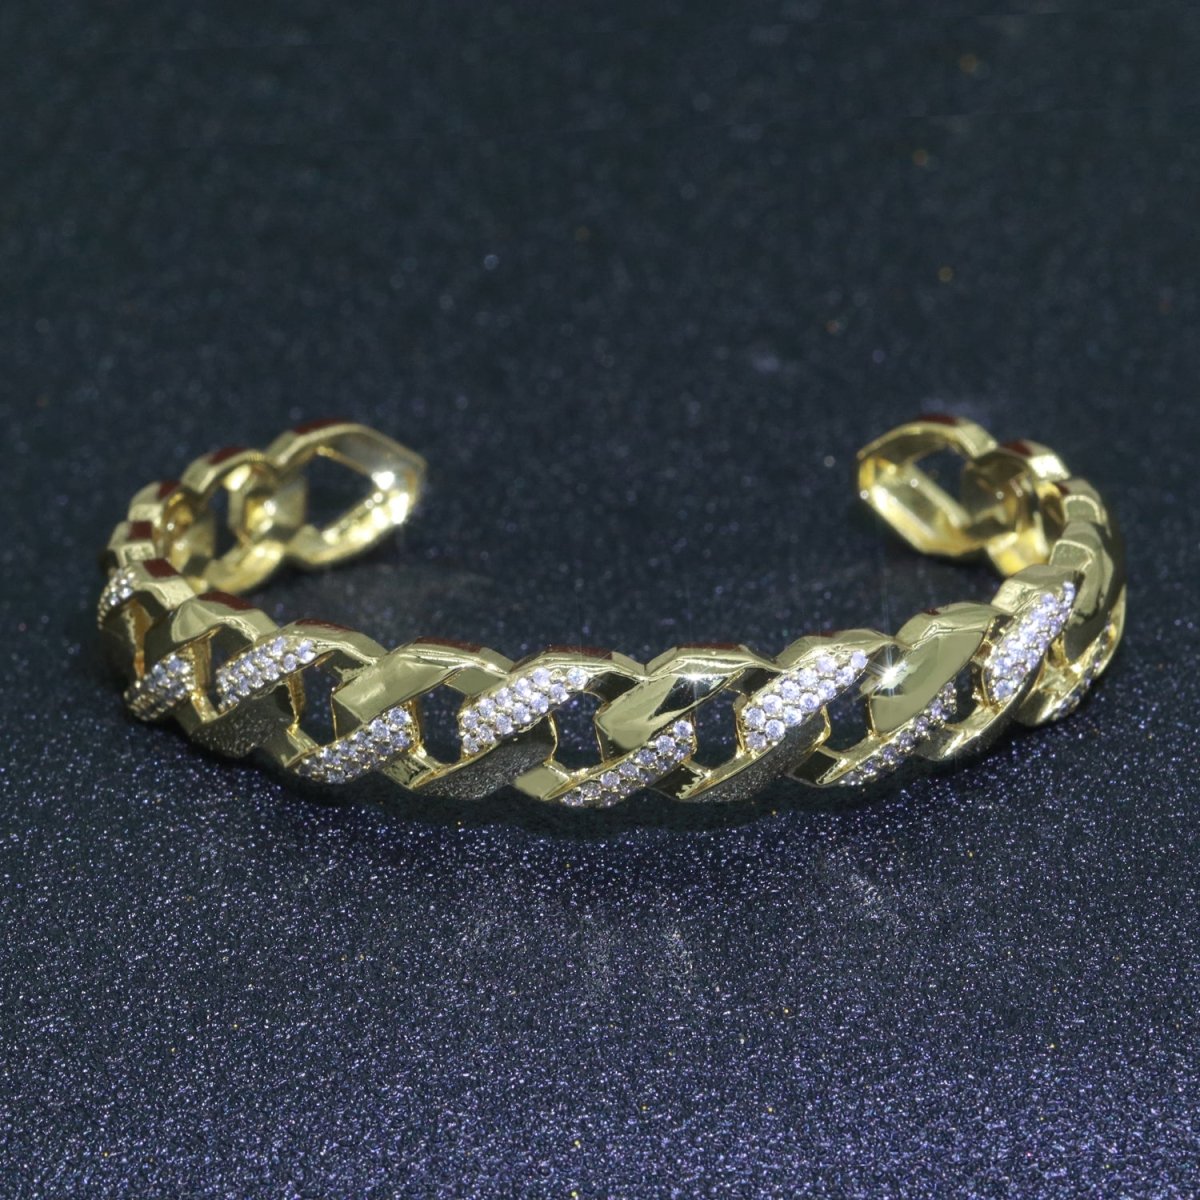 Geometric Curb Icing 24K Gold Filled Cuff Bracelet | WA-066 Clearance Pricing - DLUXCA